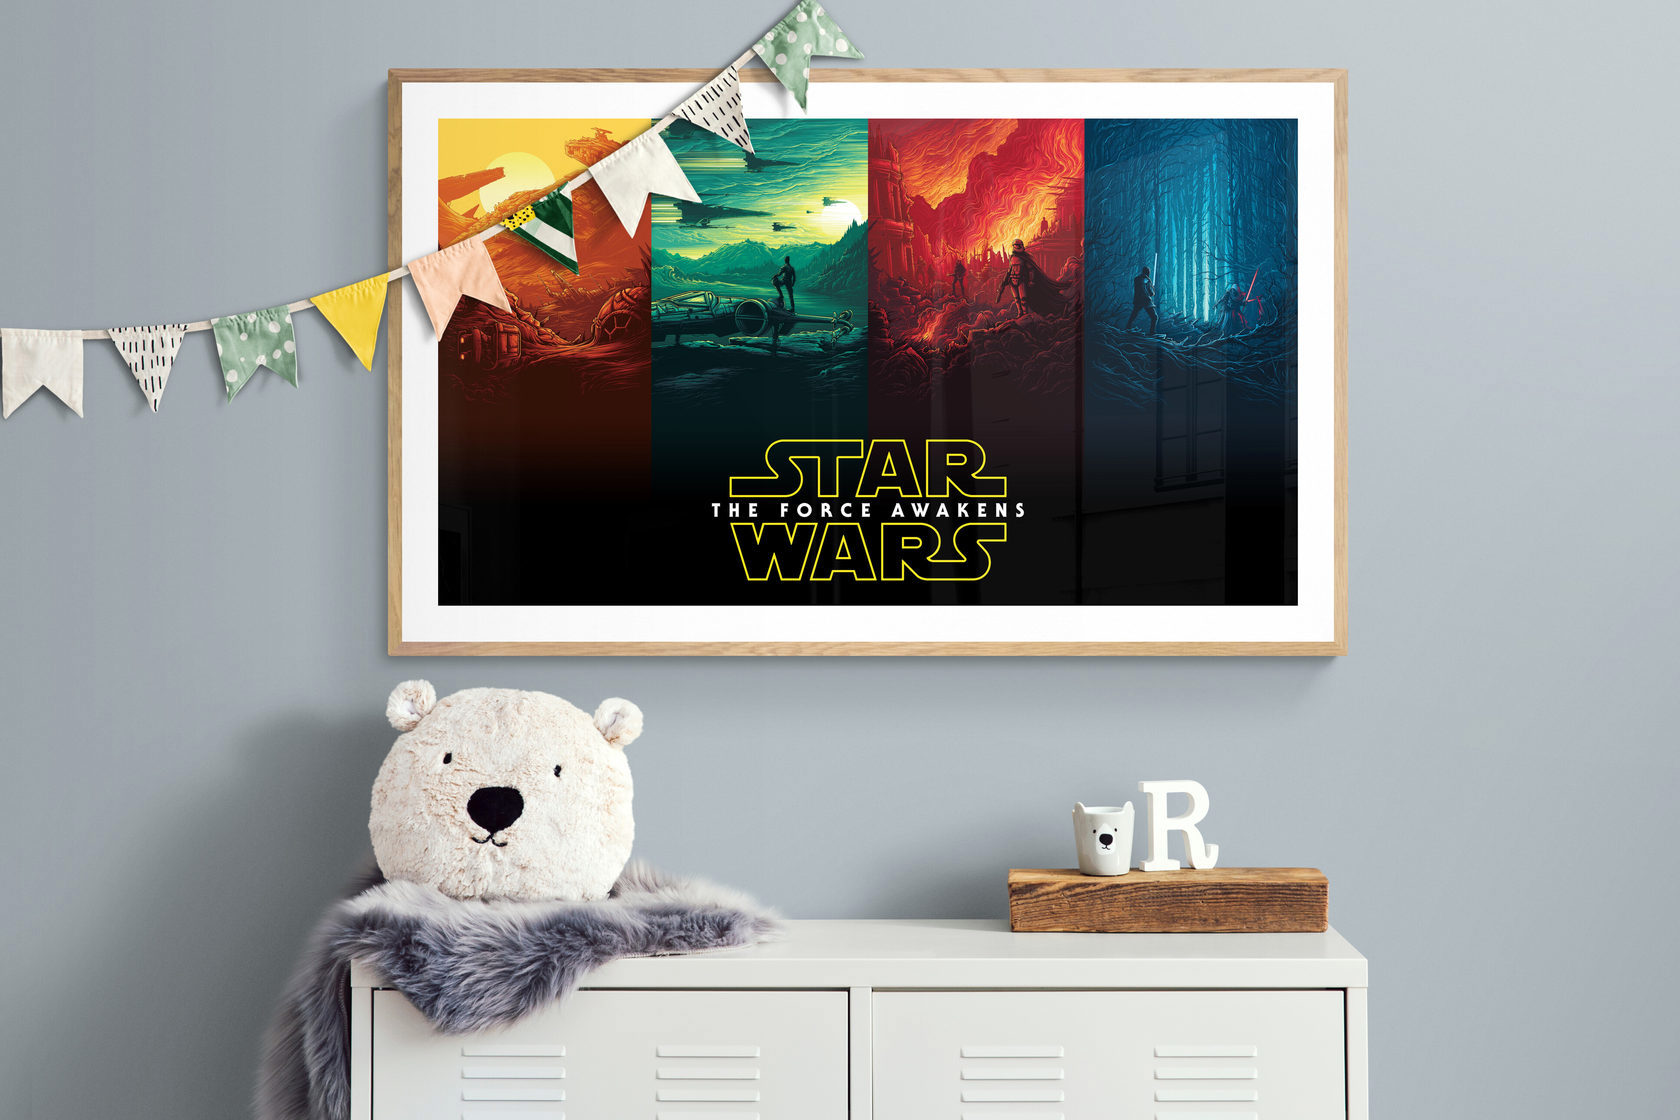 90011480 Плакат Просто Постер "Star Wars" - Пробуждение силы 60x90 в раме STLM-0084854 ПРОСТОПОСТЕР